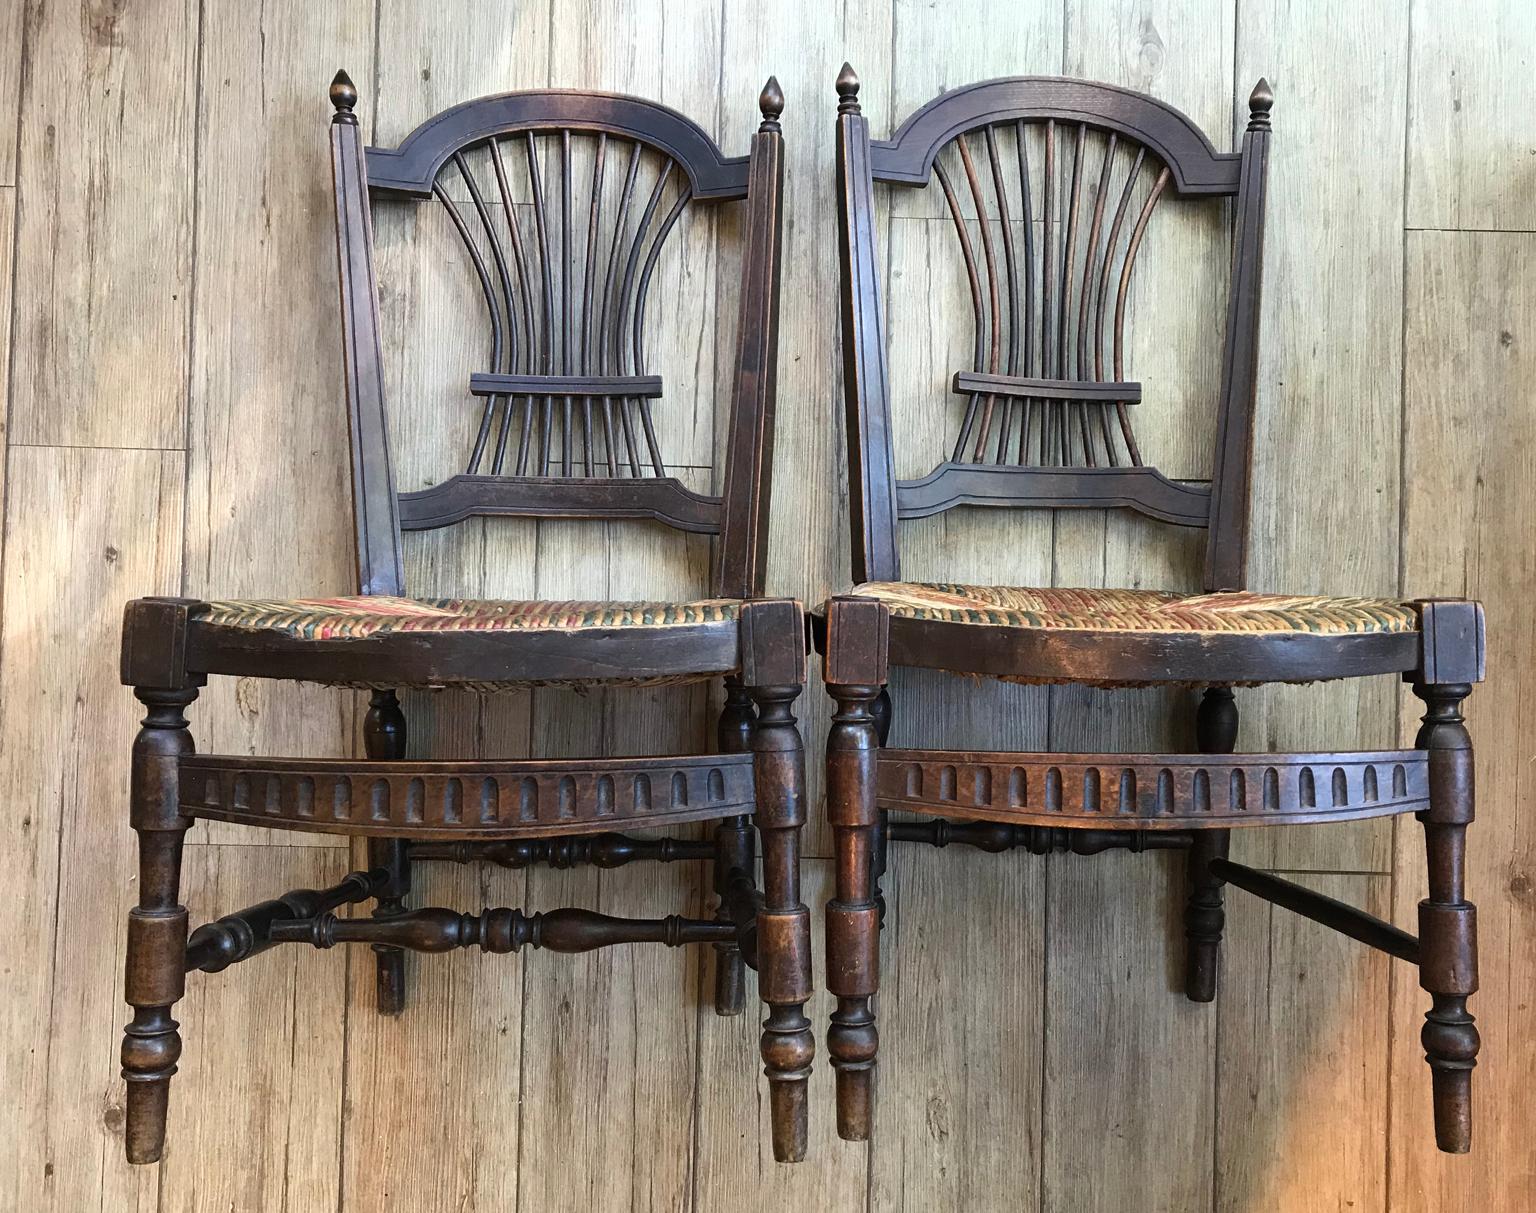 Sehr charmant Holz und Stroh Napoleon III Paar Stroh Stühle, niedrige Sitzgelegenheiten, in einem guten Zustand.
Frankreich 19. Jahrhundert.